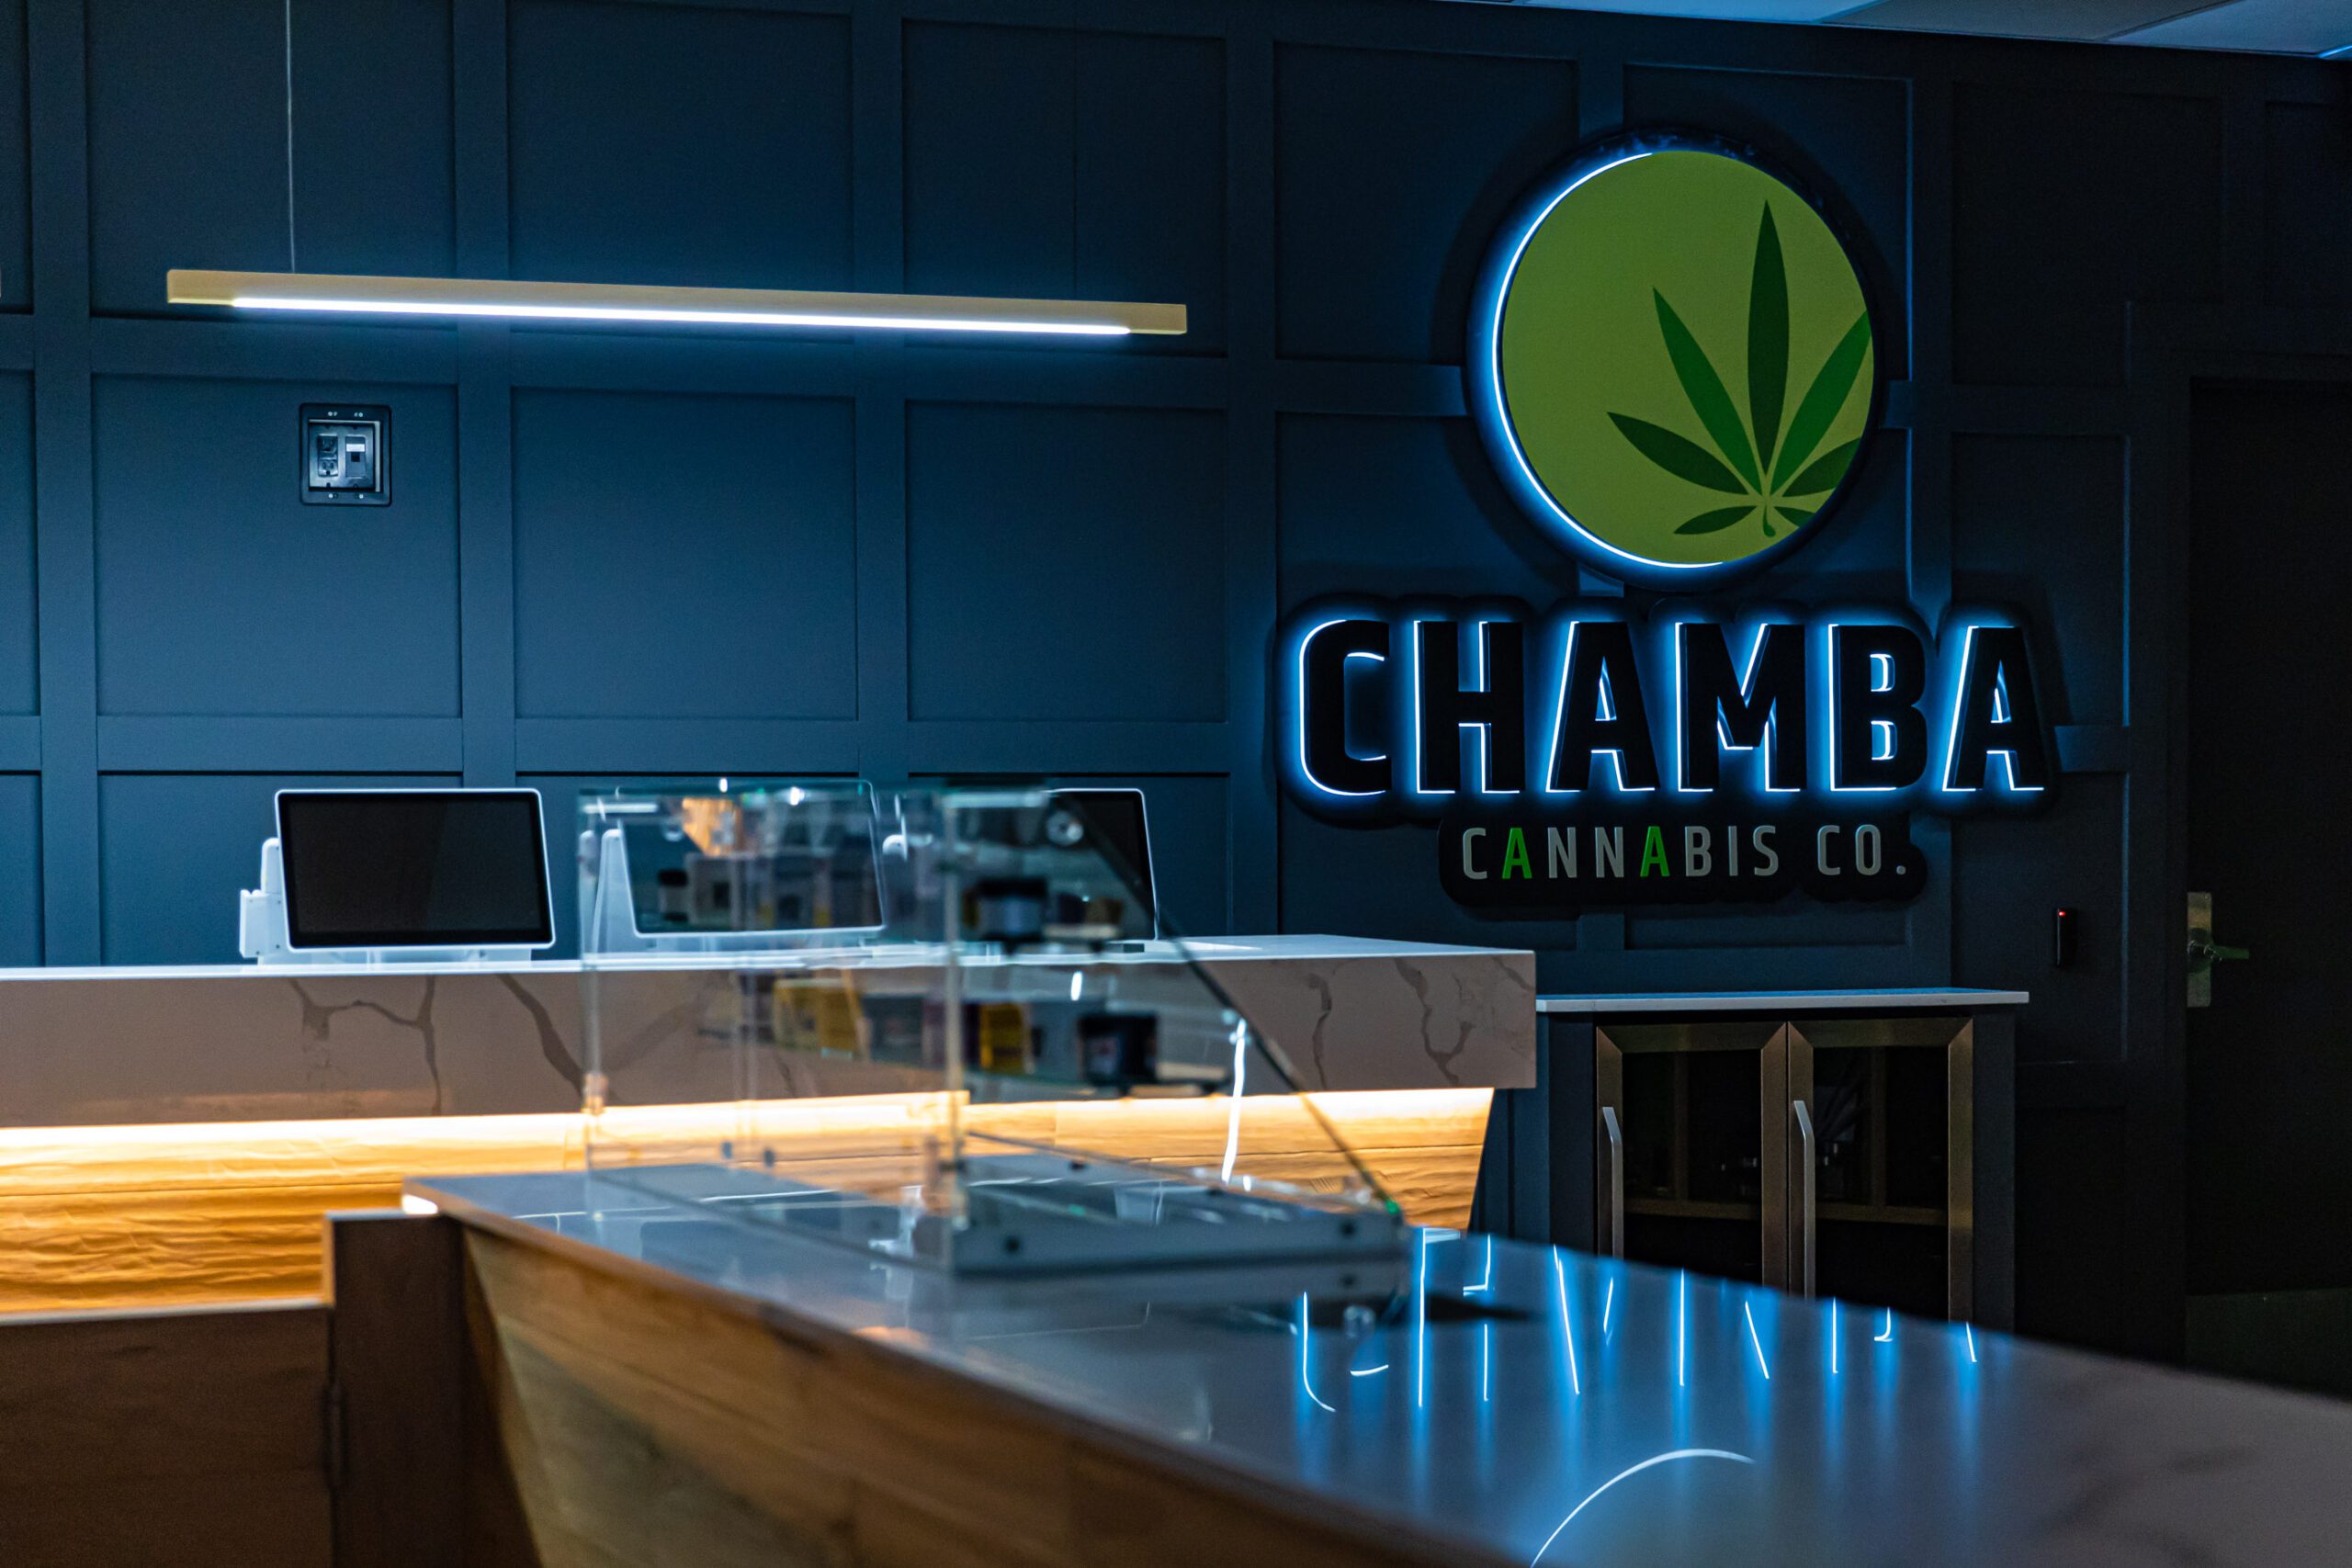 Chamba Cannabis Co. logo wall and counter display at Waterloo store.